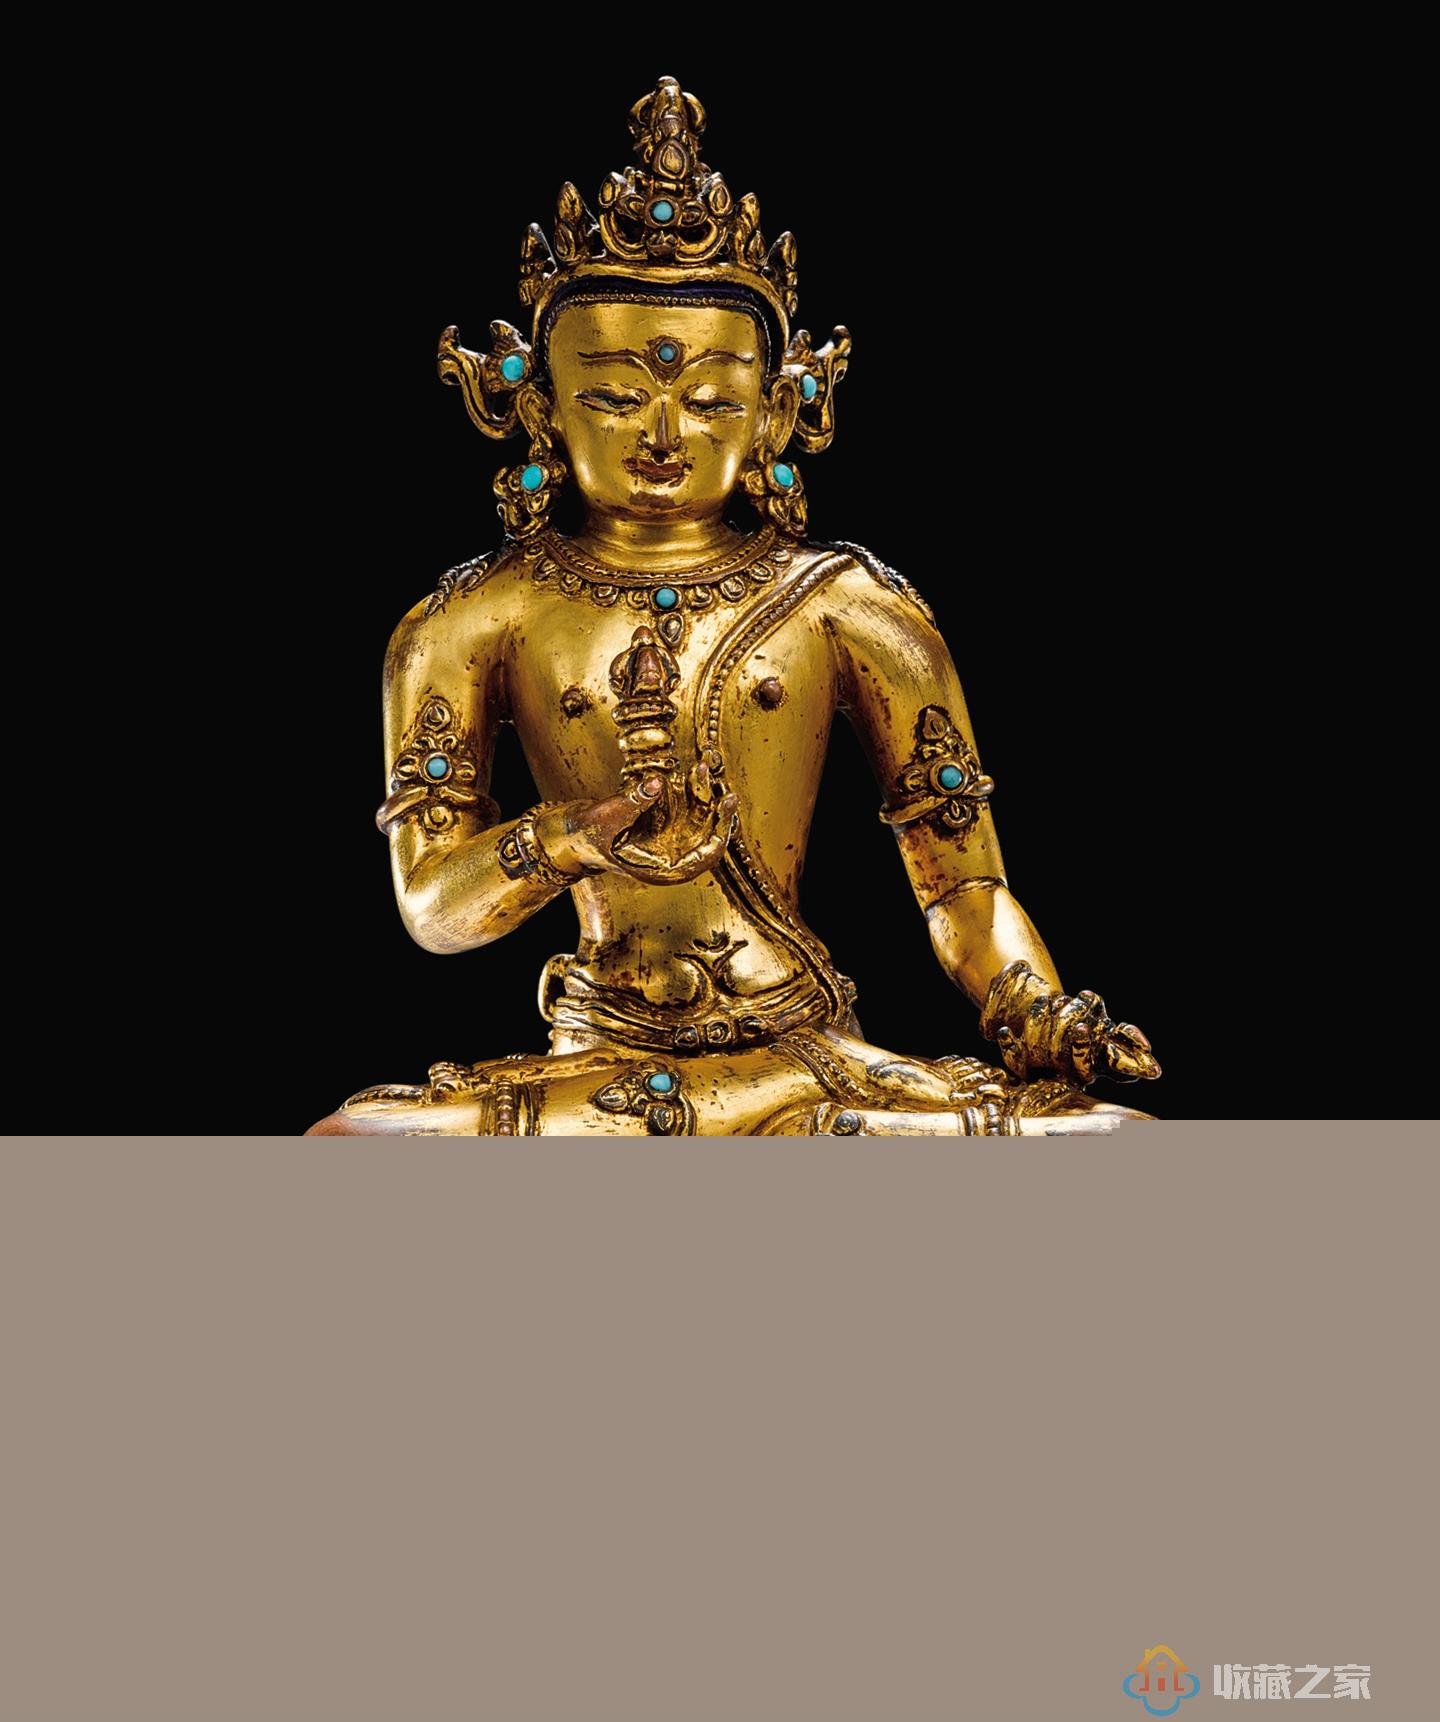  尼泊尔铜鎏金佛像如何辨别